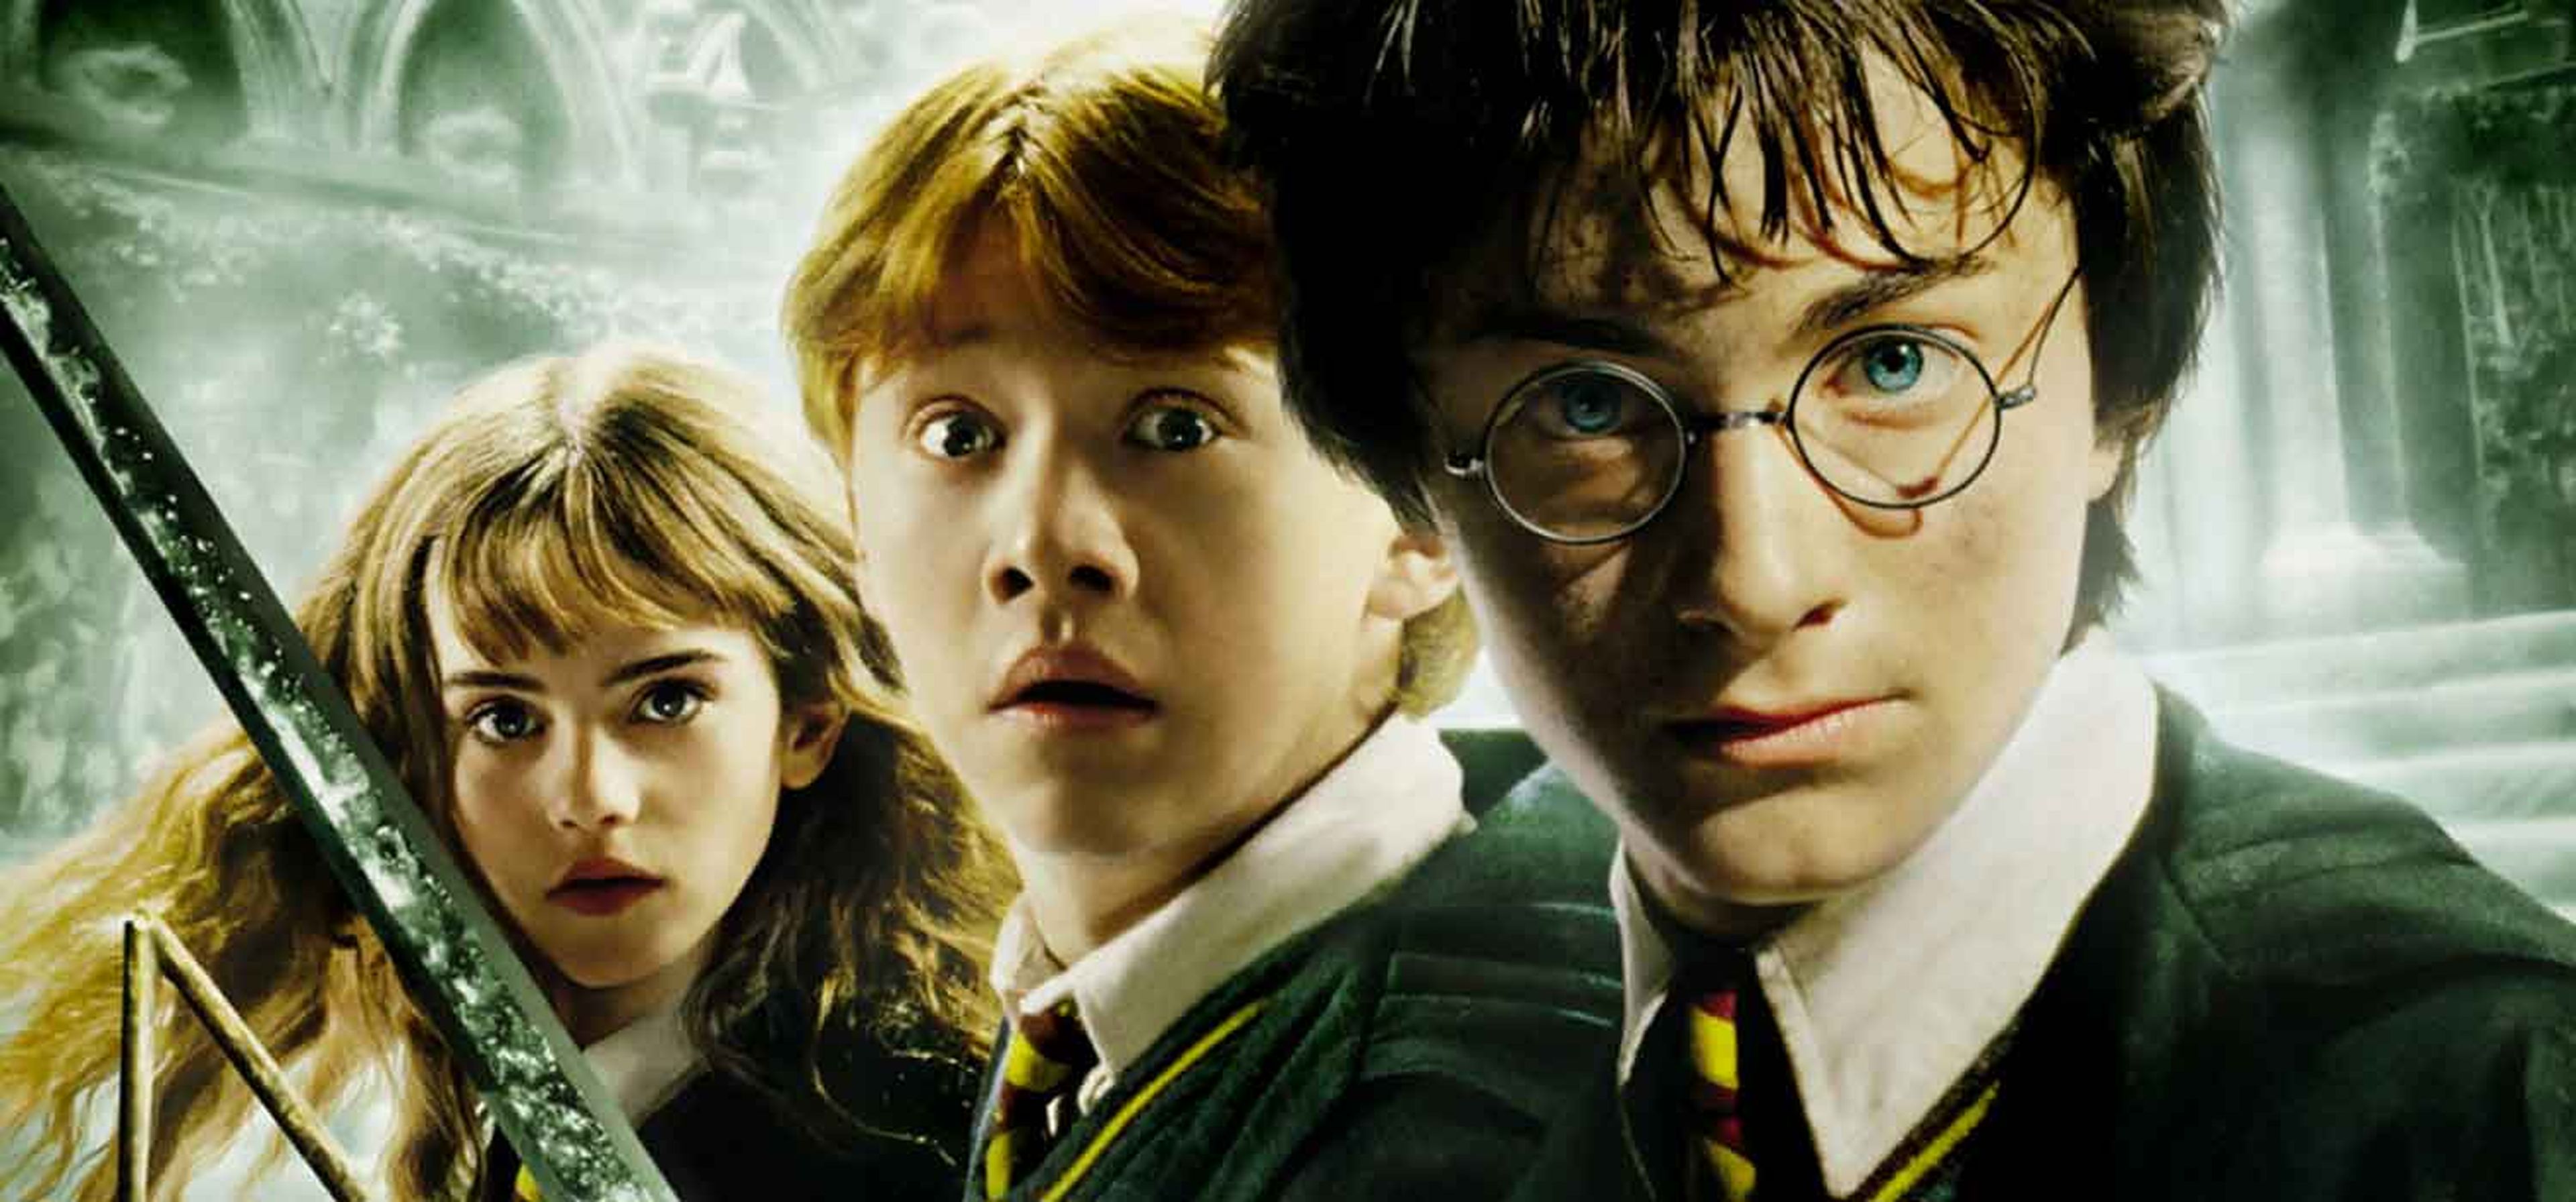 Harry Potter y la Cámara secreta  ¡Que la magia de Hogwarts entre